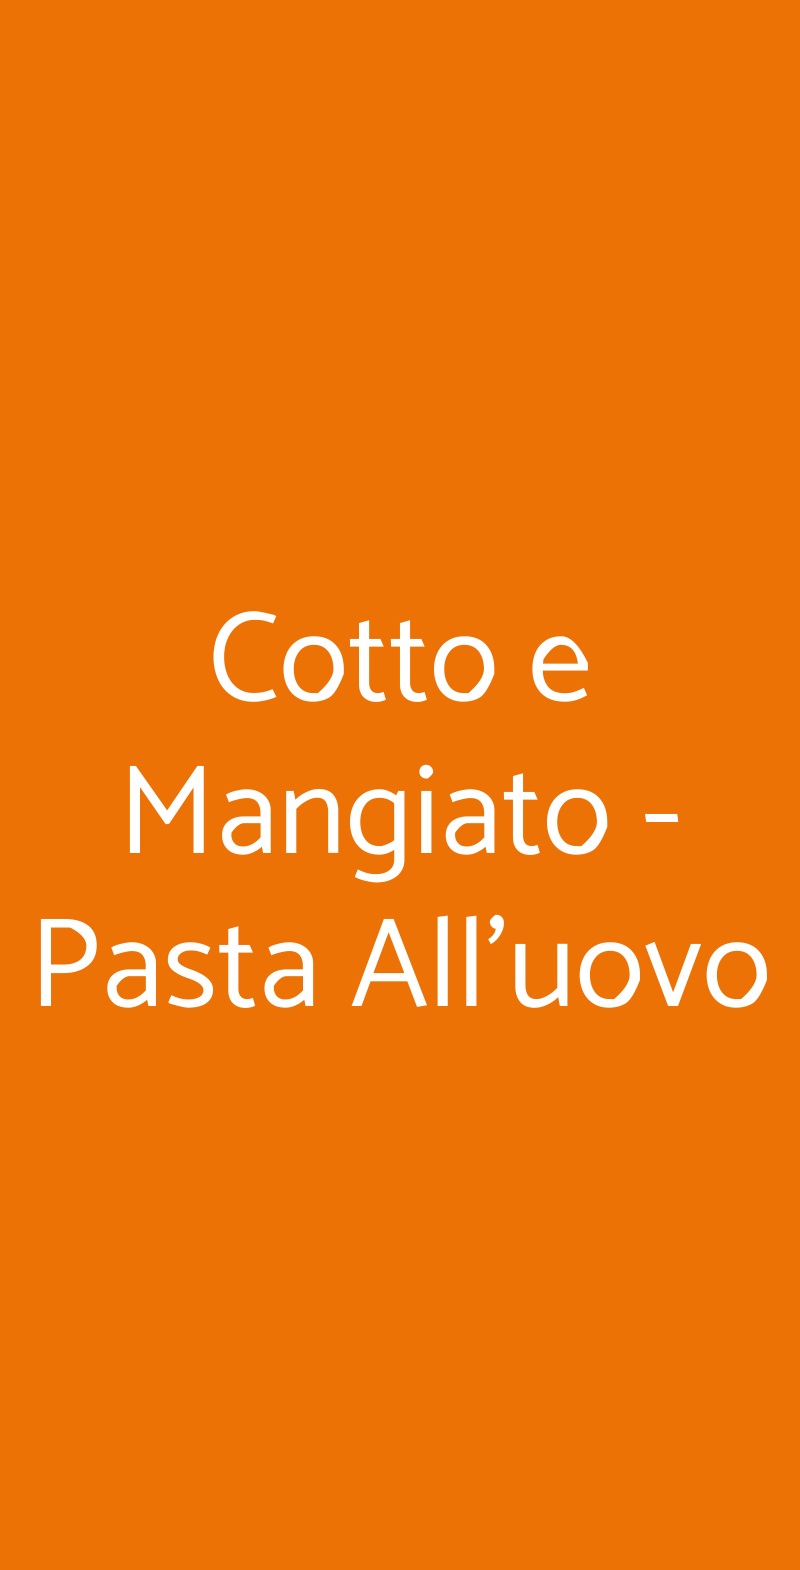 Cotto e Mangiato - Pasta All'uovo Roma menù 1 pagina